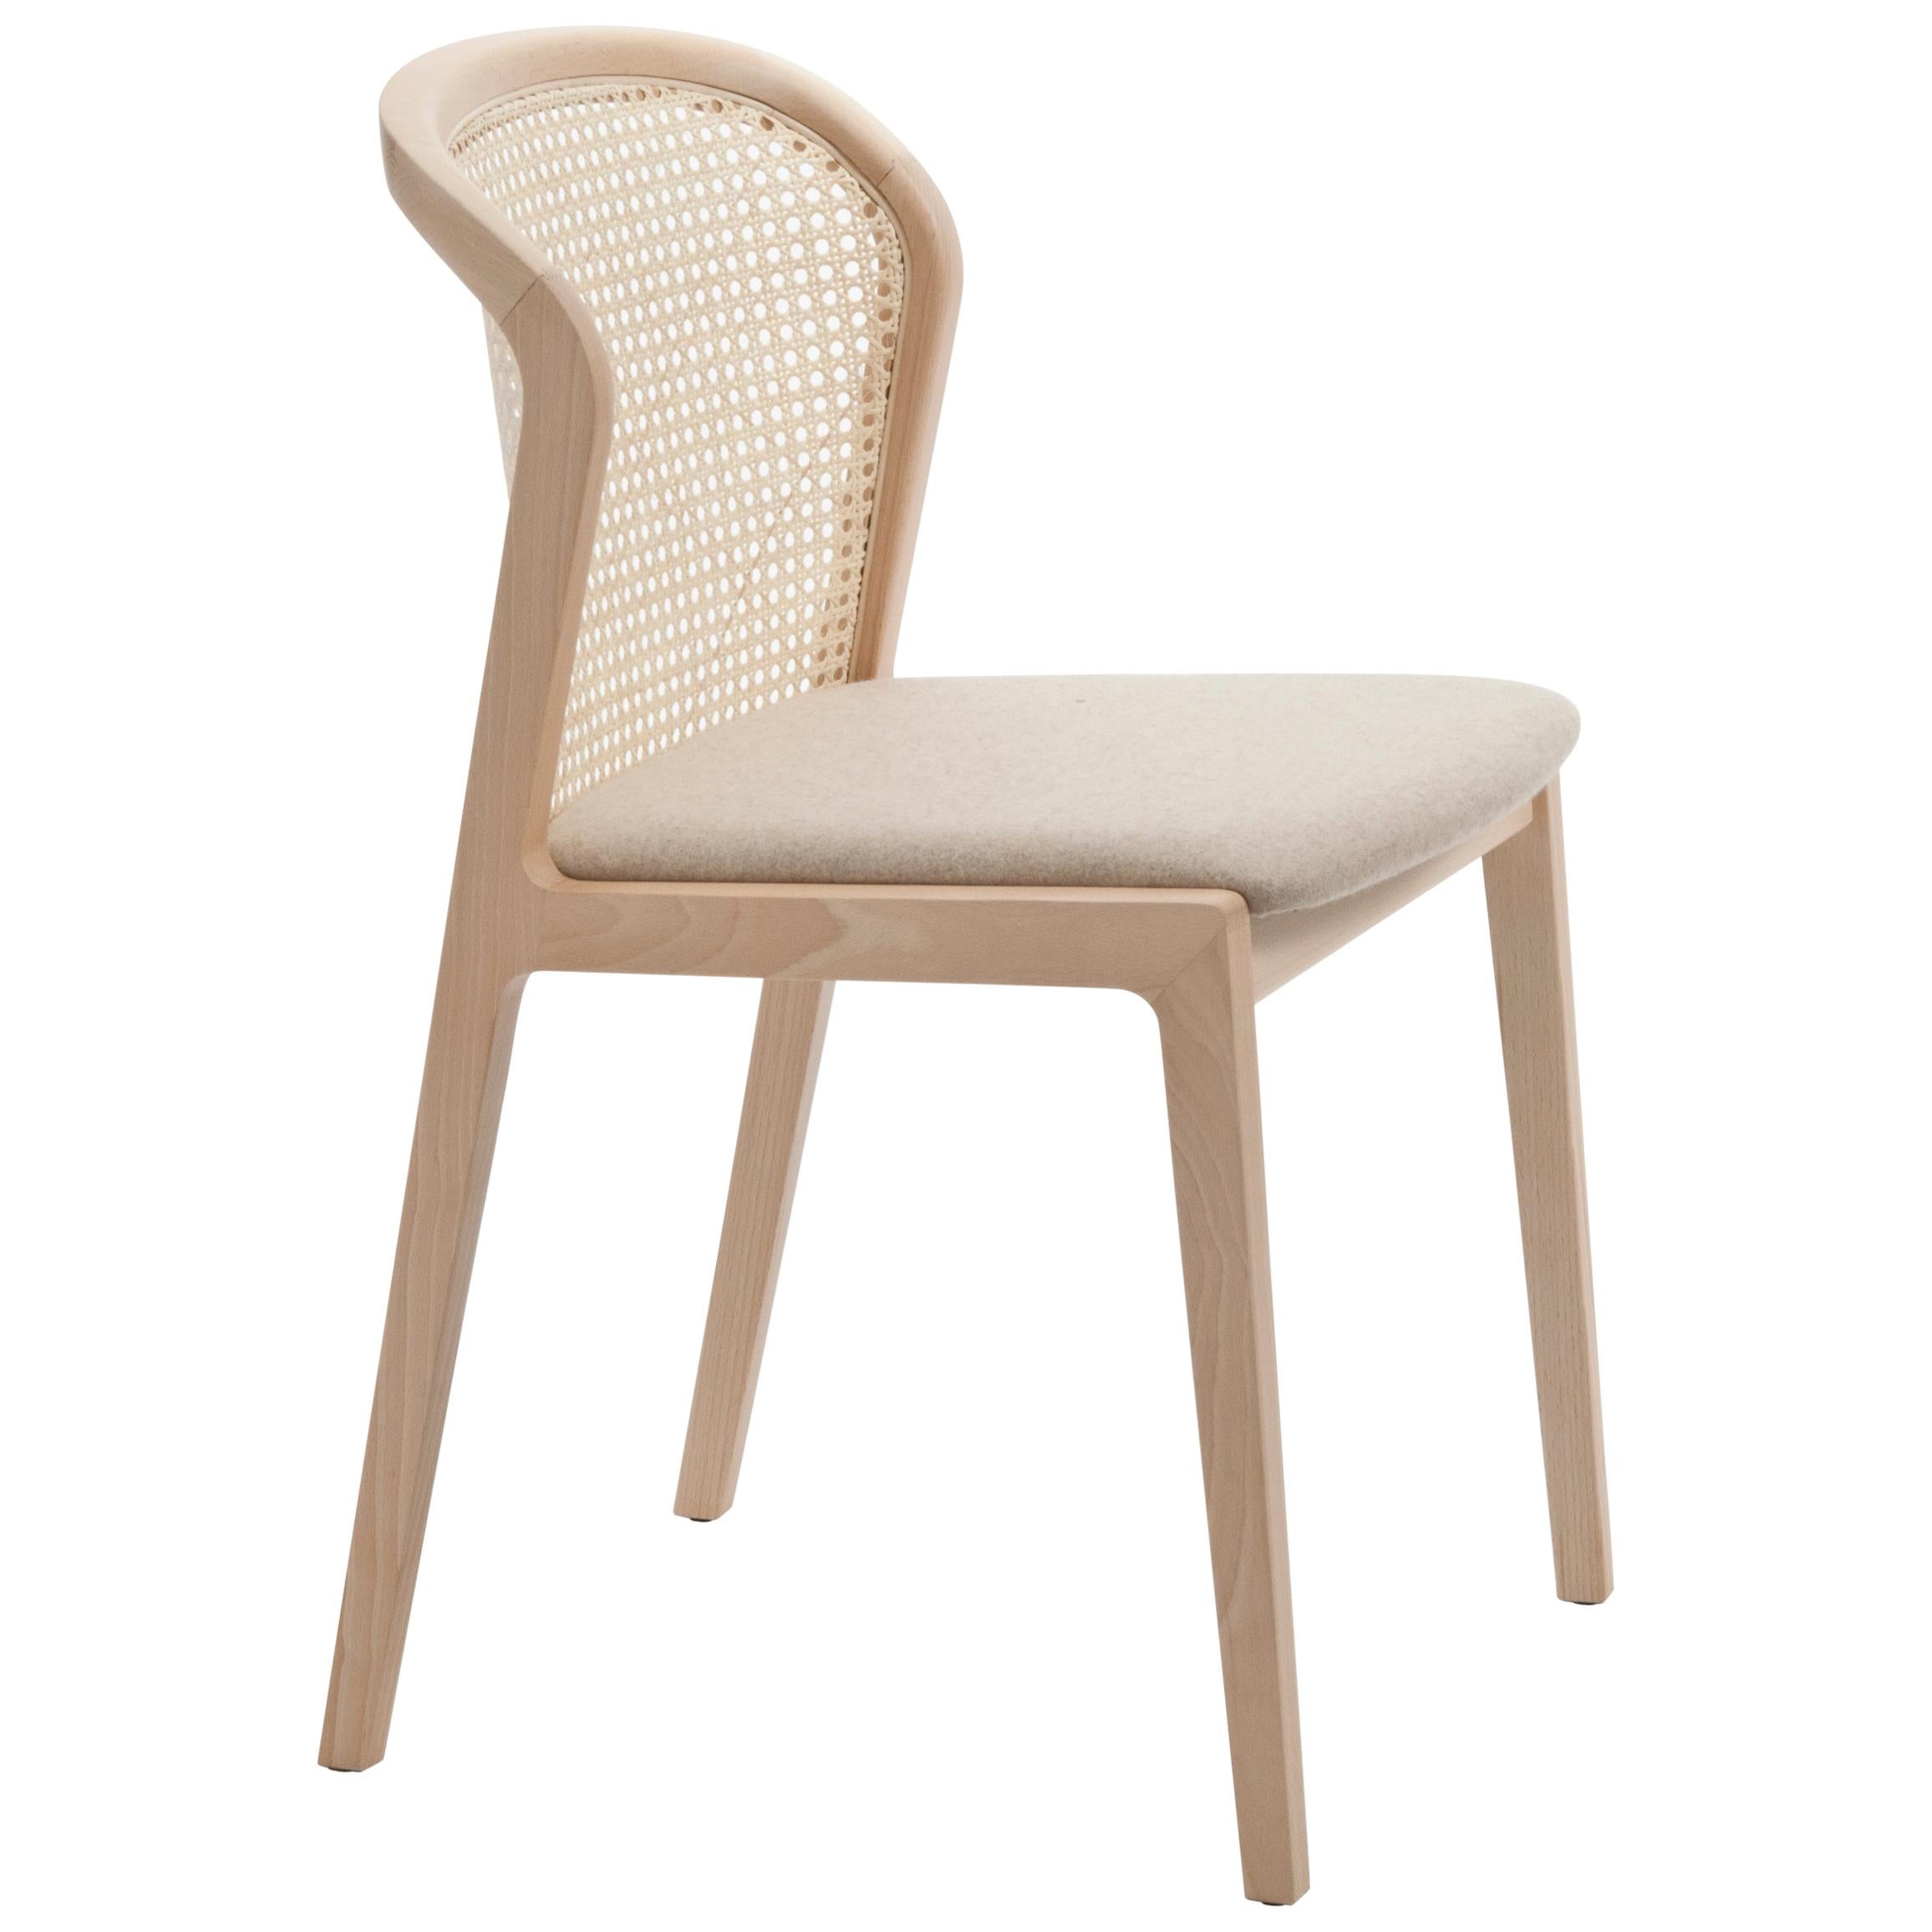 Chaise Vienna, Design/One contemporain inspiré des chaises traditionnelles en paille